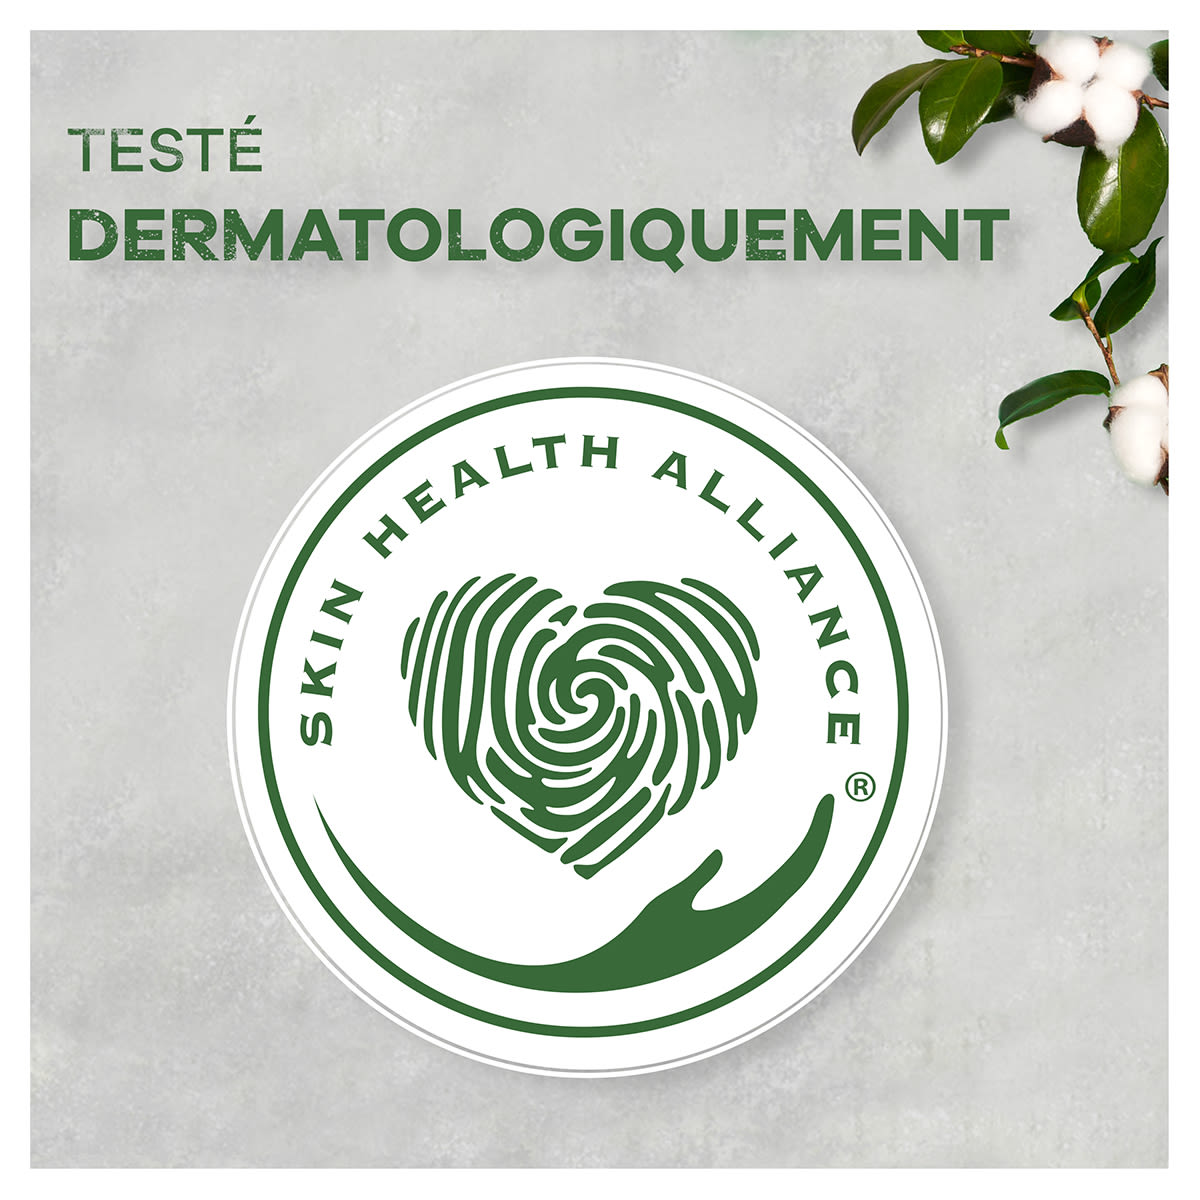 Approuvé dermatologiquement par la Skin Health Alliance (Alliance pour la santé de la peau)